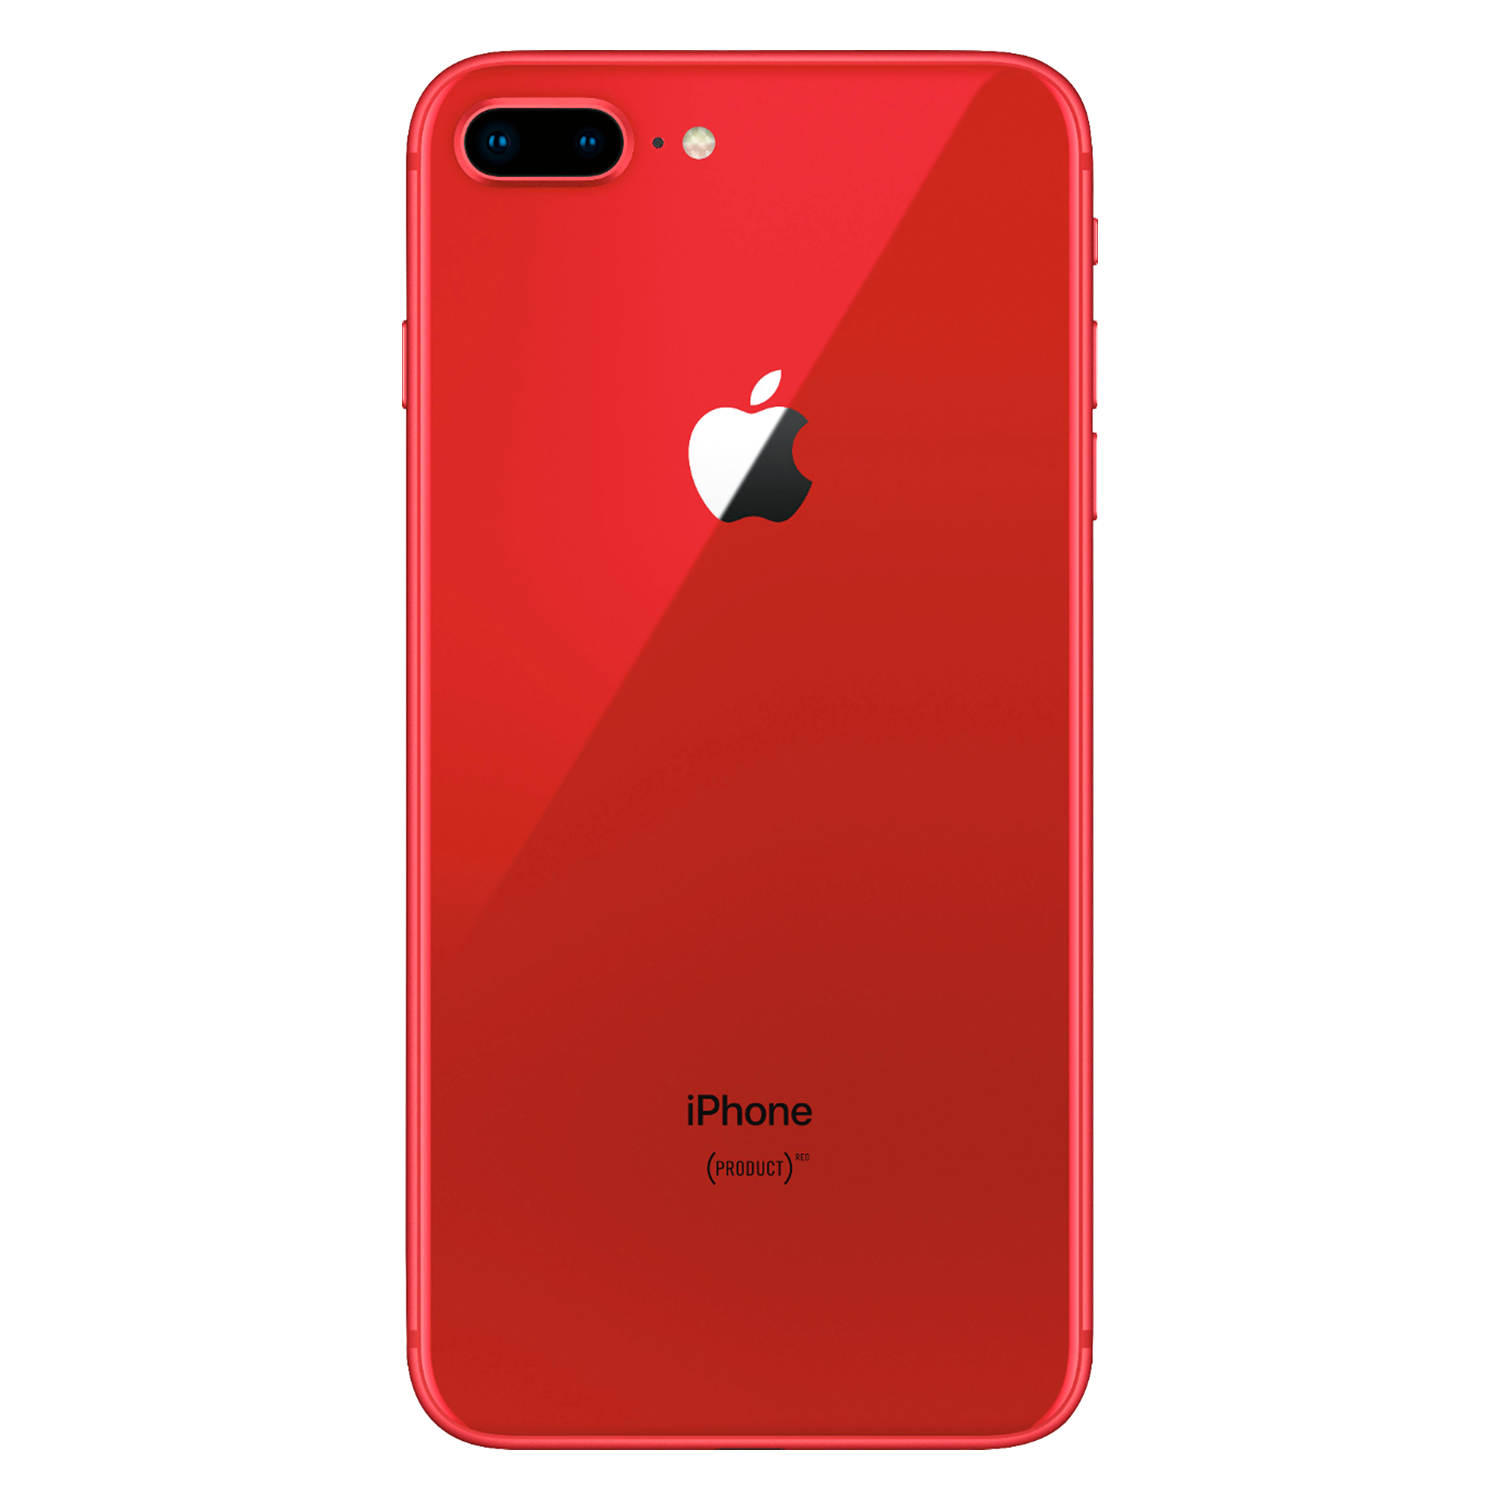 Apple iPhone 8 Plus *Swap A+* A1864 LL 64GB 3GB RAM Tela 5.5" - Vermelho (Somente Aparelho)